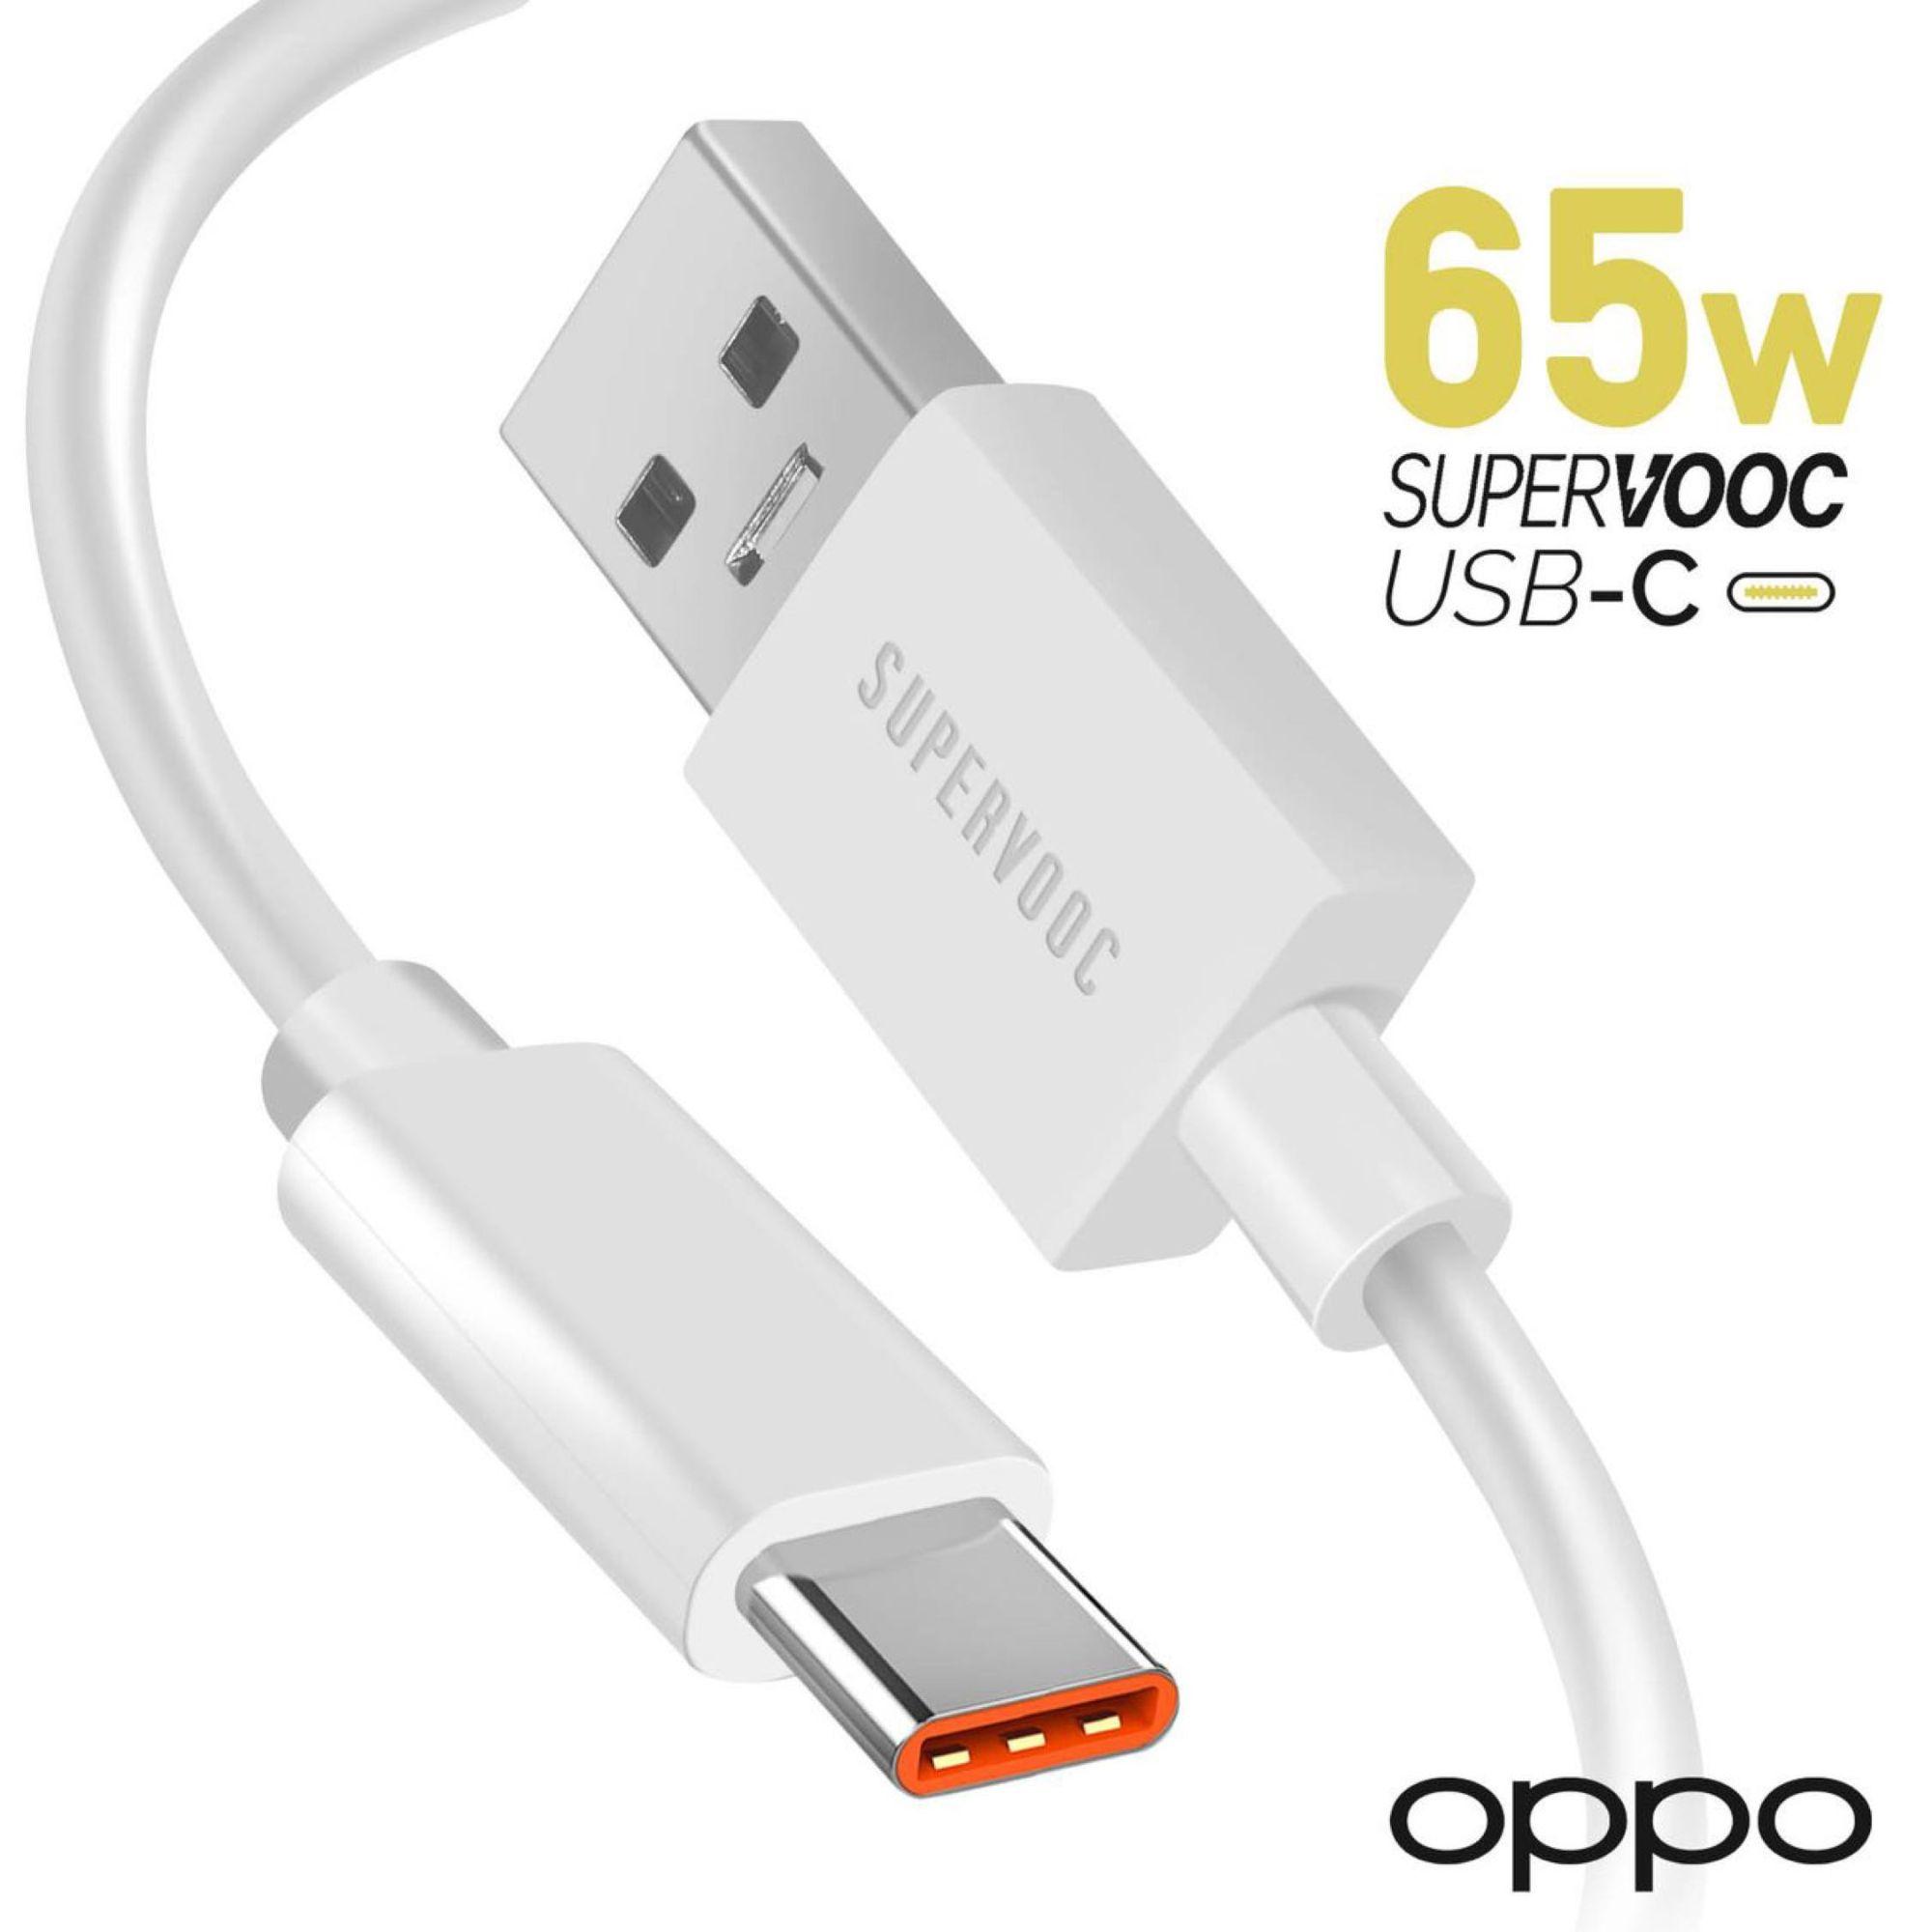 1€99 sur Chargeur Oppo USB SuperVOOC 65W plus Câble USB vers USB-C